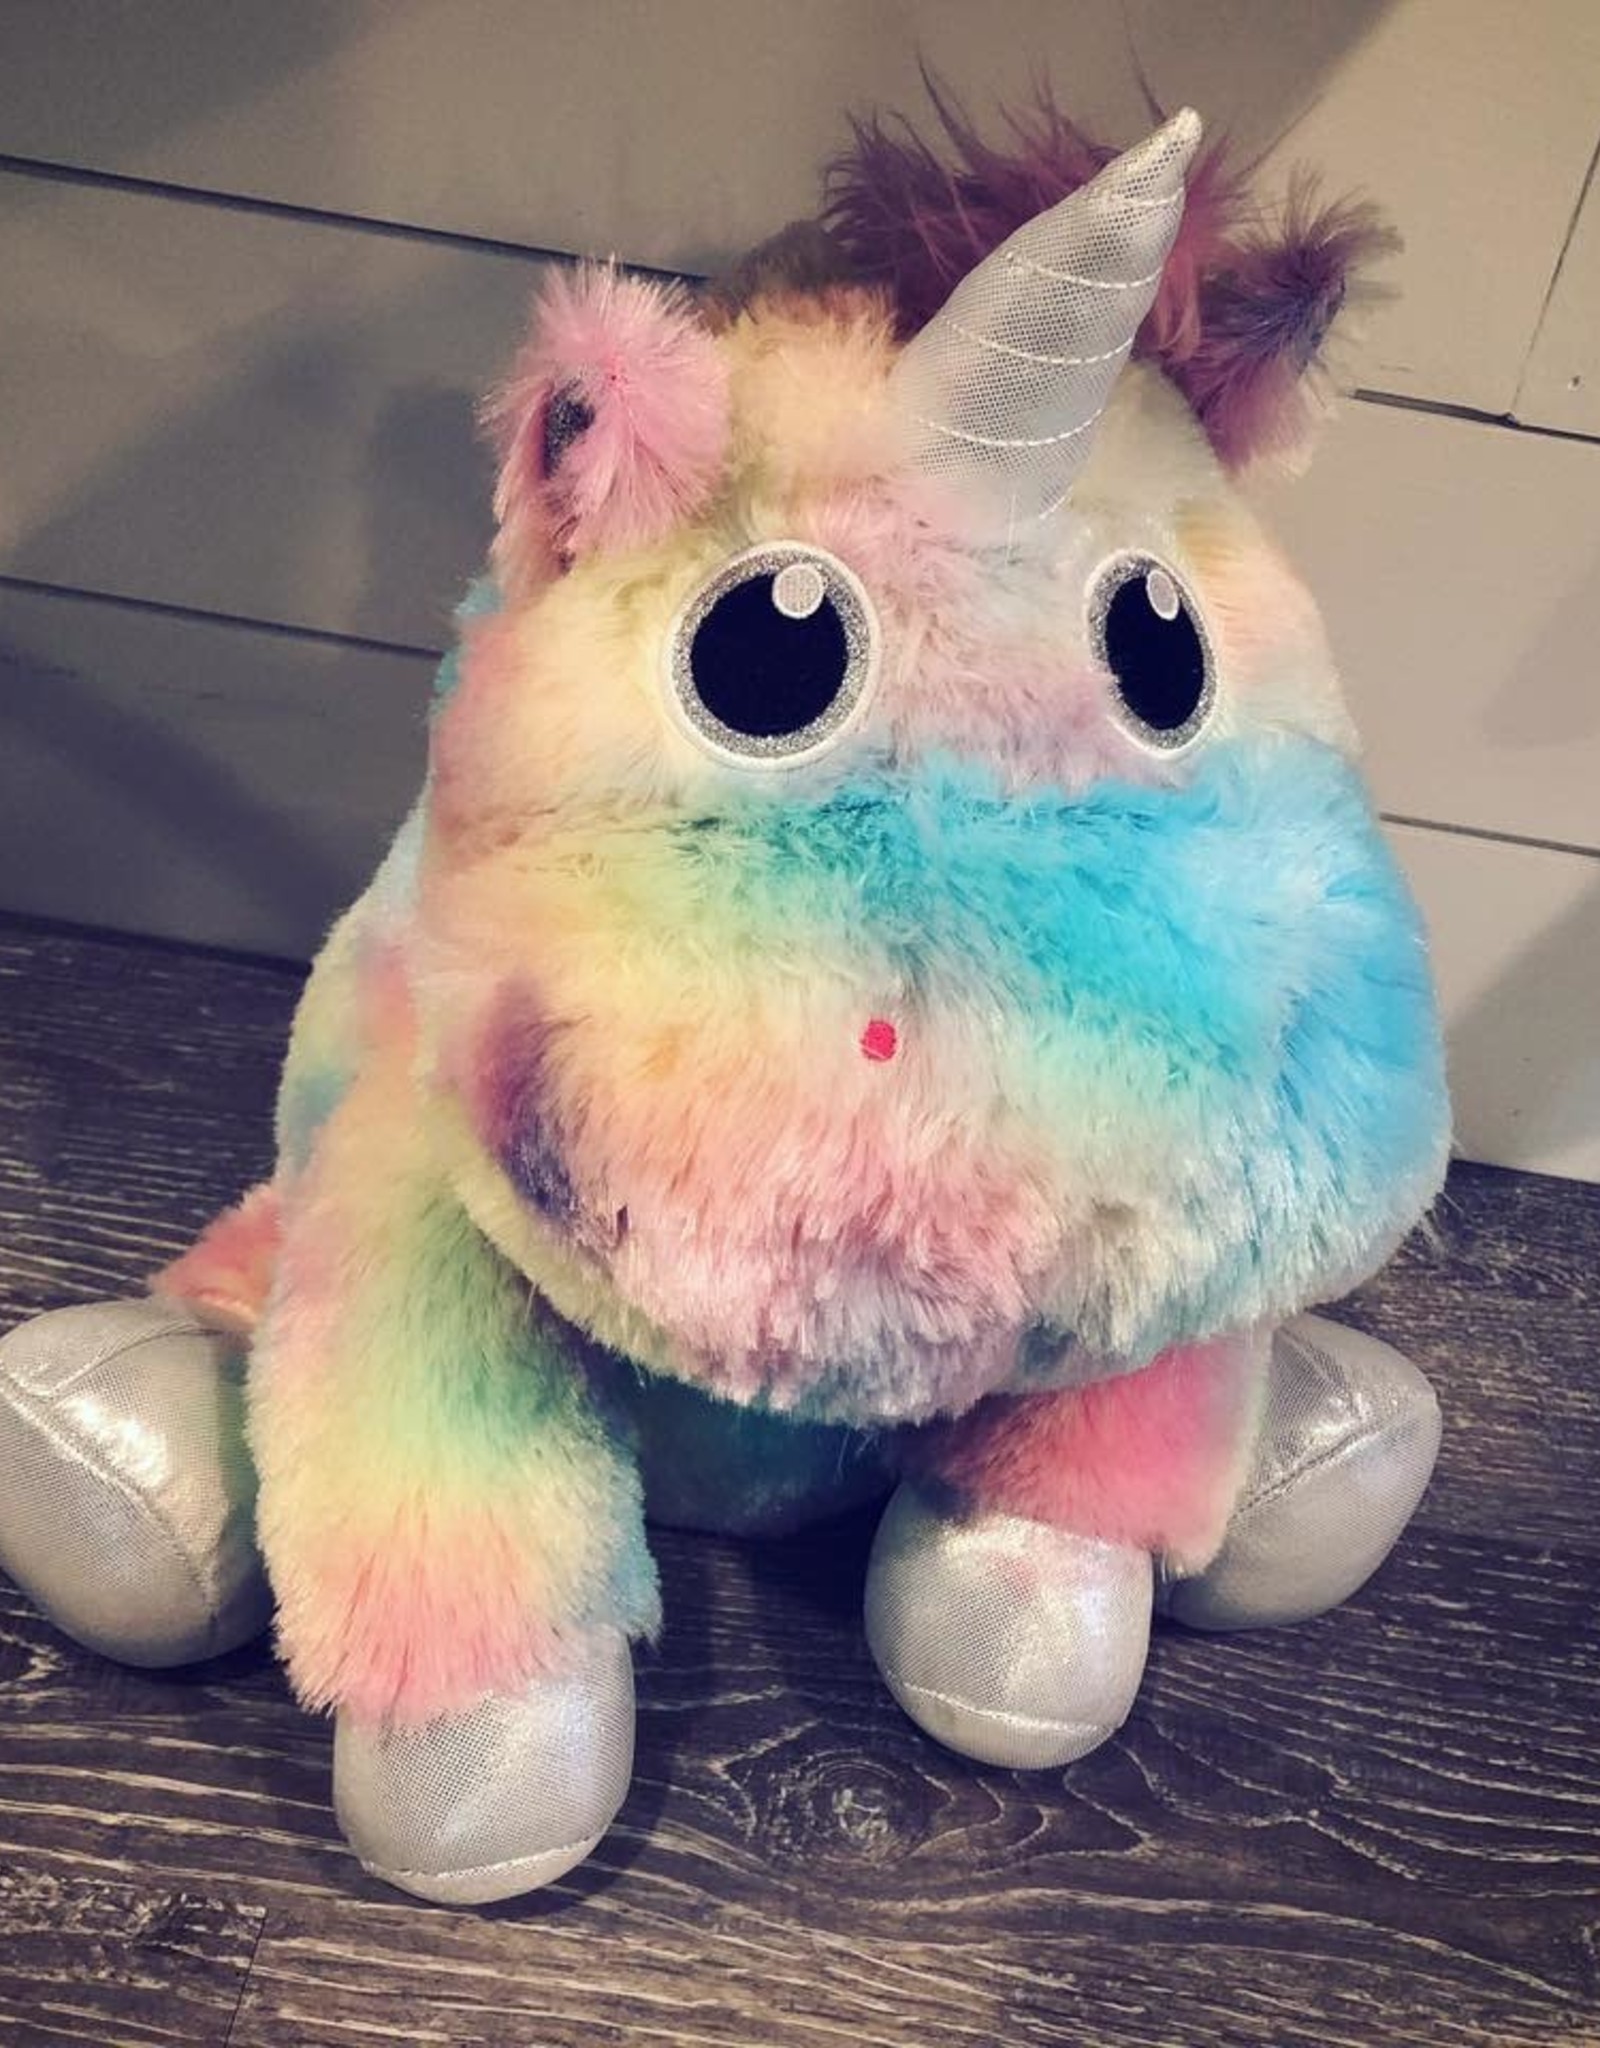 tie dye unicorn stuffed animal